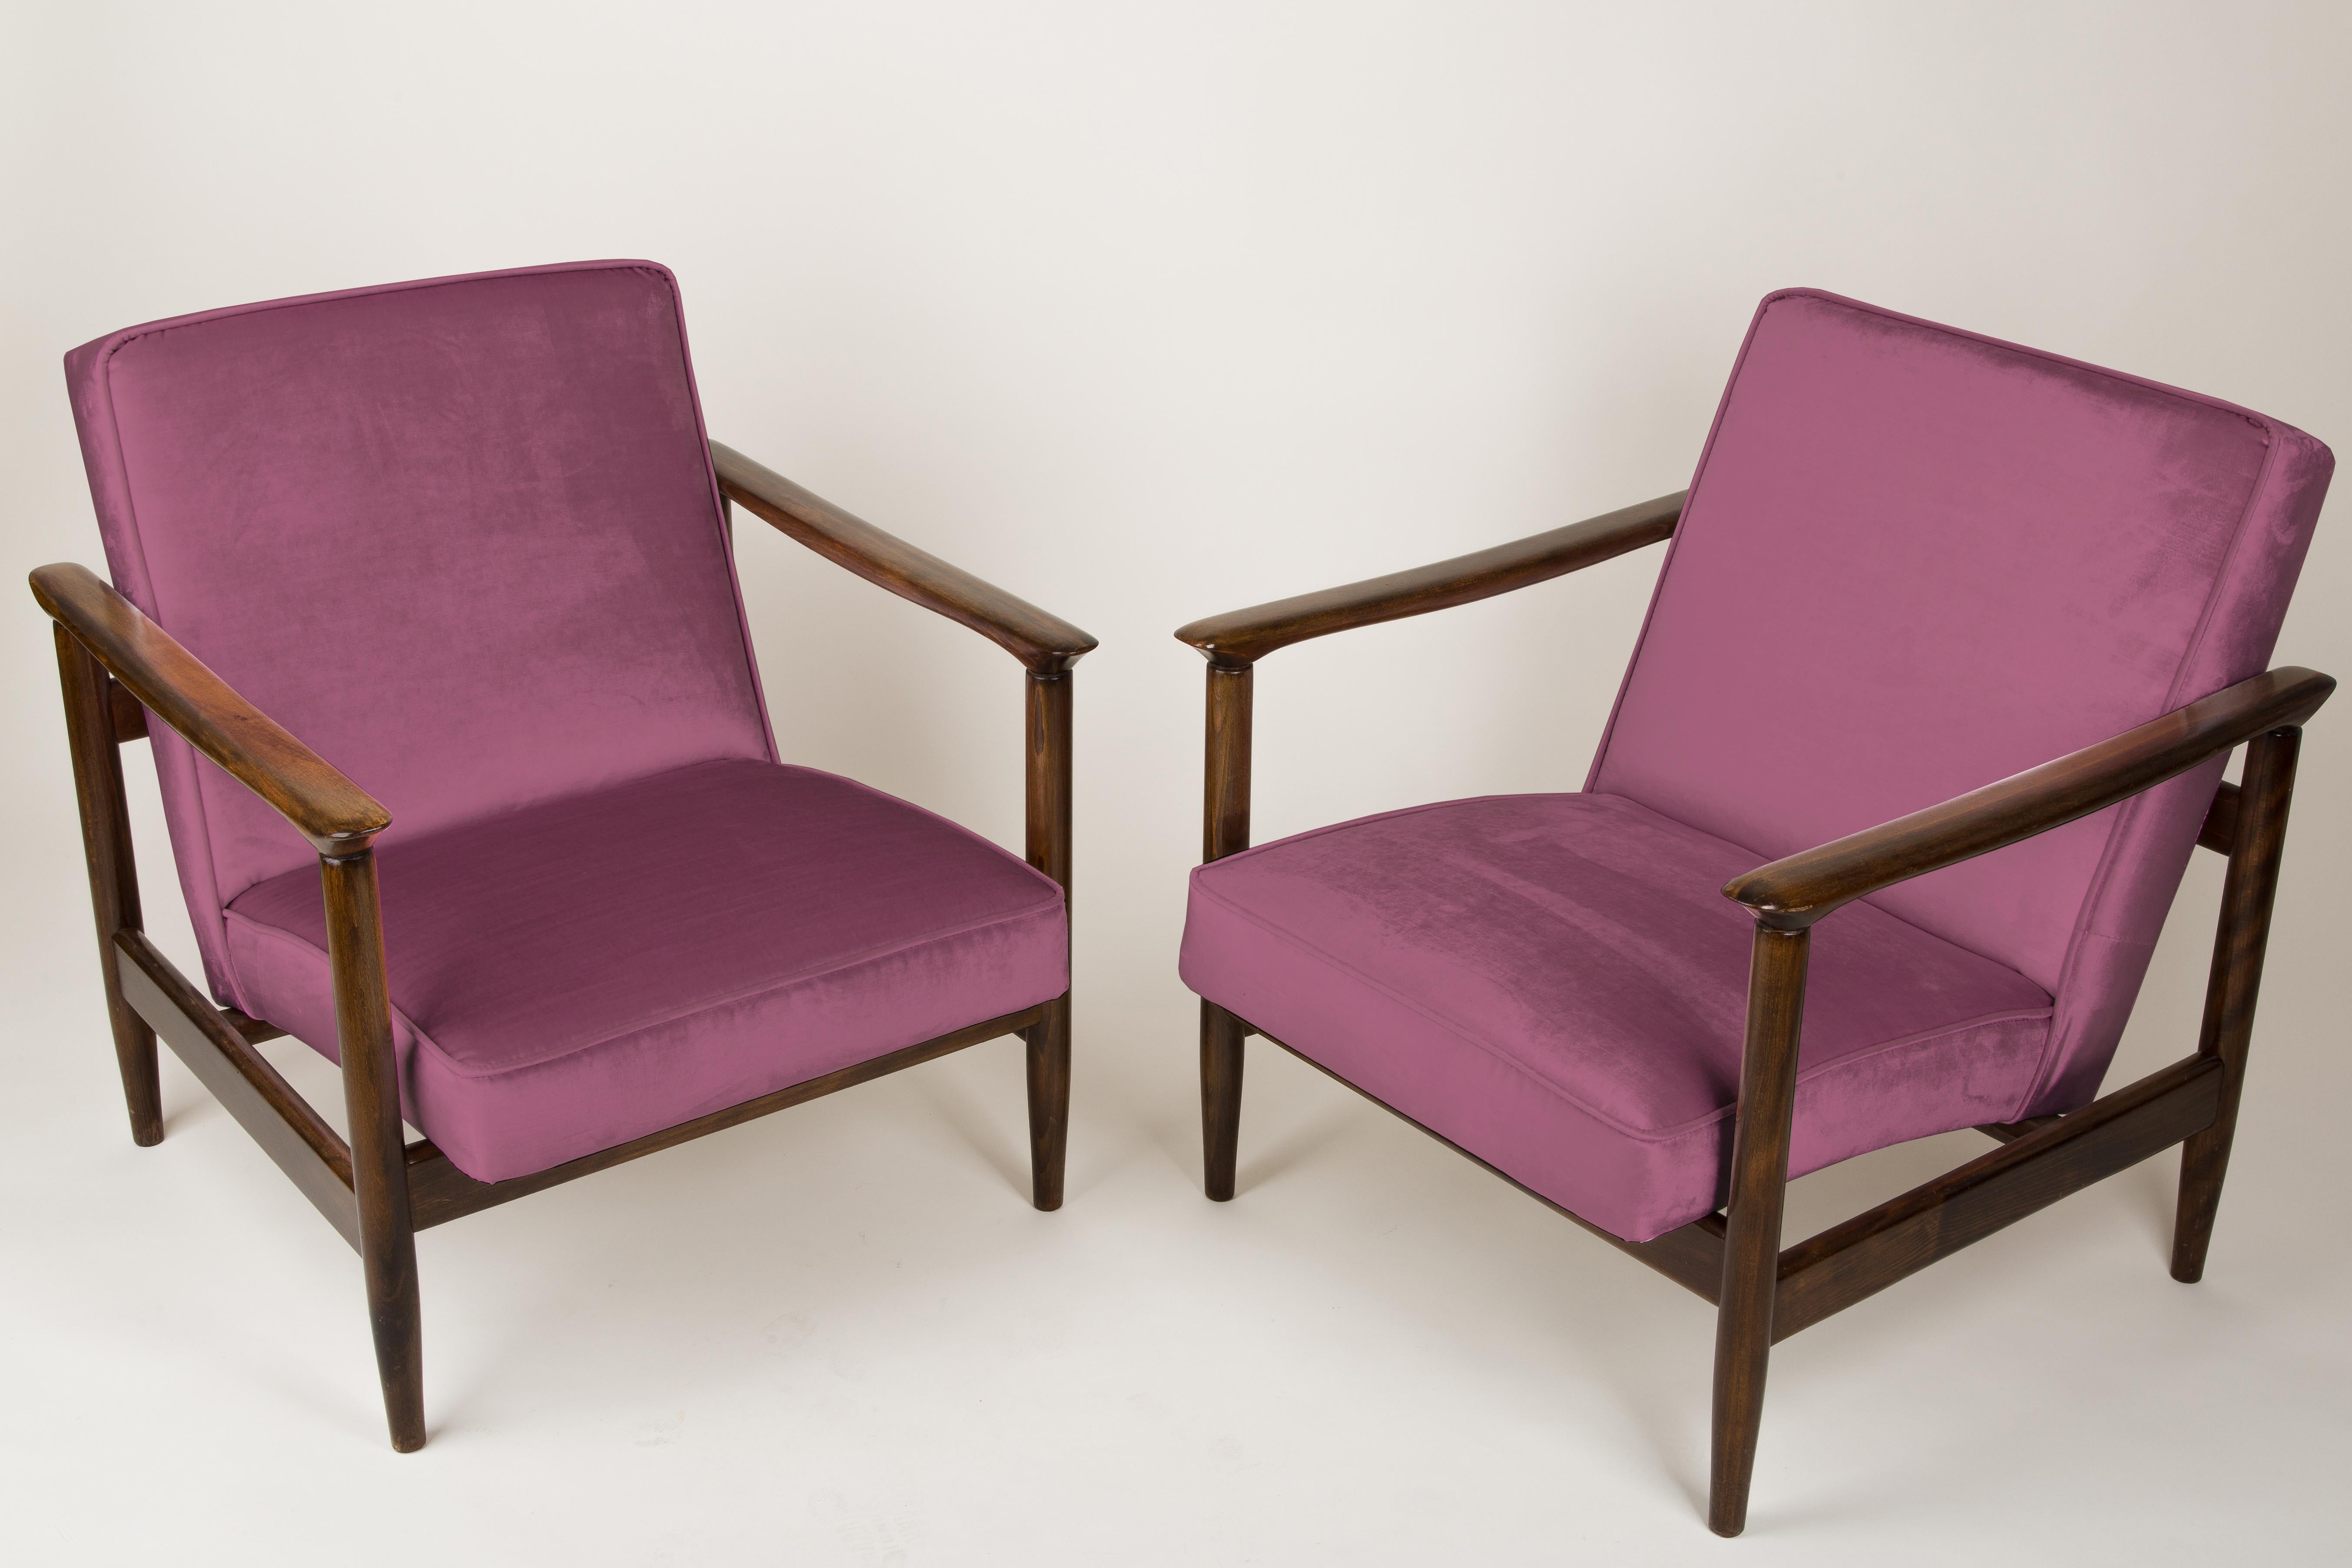 Ein Paar Sessel GFM-142, entworfen von Edmund Homa. Die Sessel wurden in den 1960er Jahren in der Möbelfabrik Goscieninska hergestellt. Sie sind aus massivem Buchenholz gefertigt. Der GFM-142 Sessel gilt als einer der besten polnischen Sesseldesigns